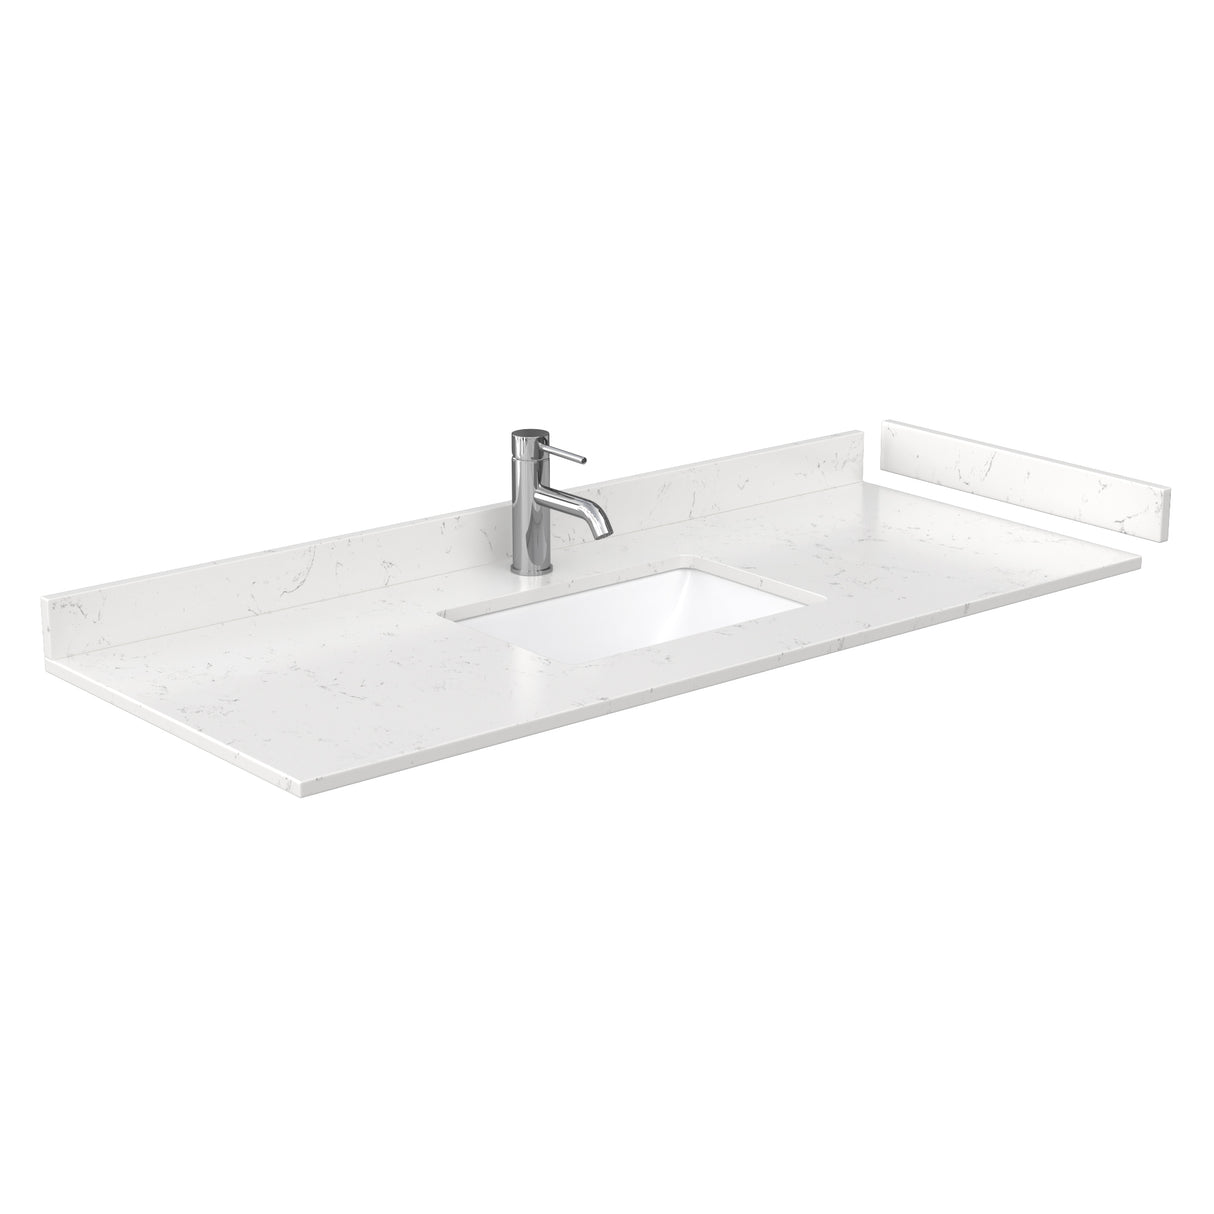 Beckett 54 Inch Single Bathroom Vanity in Dark Gray Carrara Cultured Marble Countertop Undermount Square Sink No Mirror